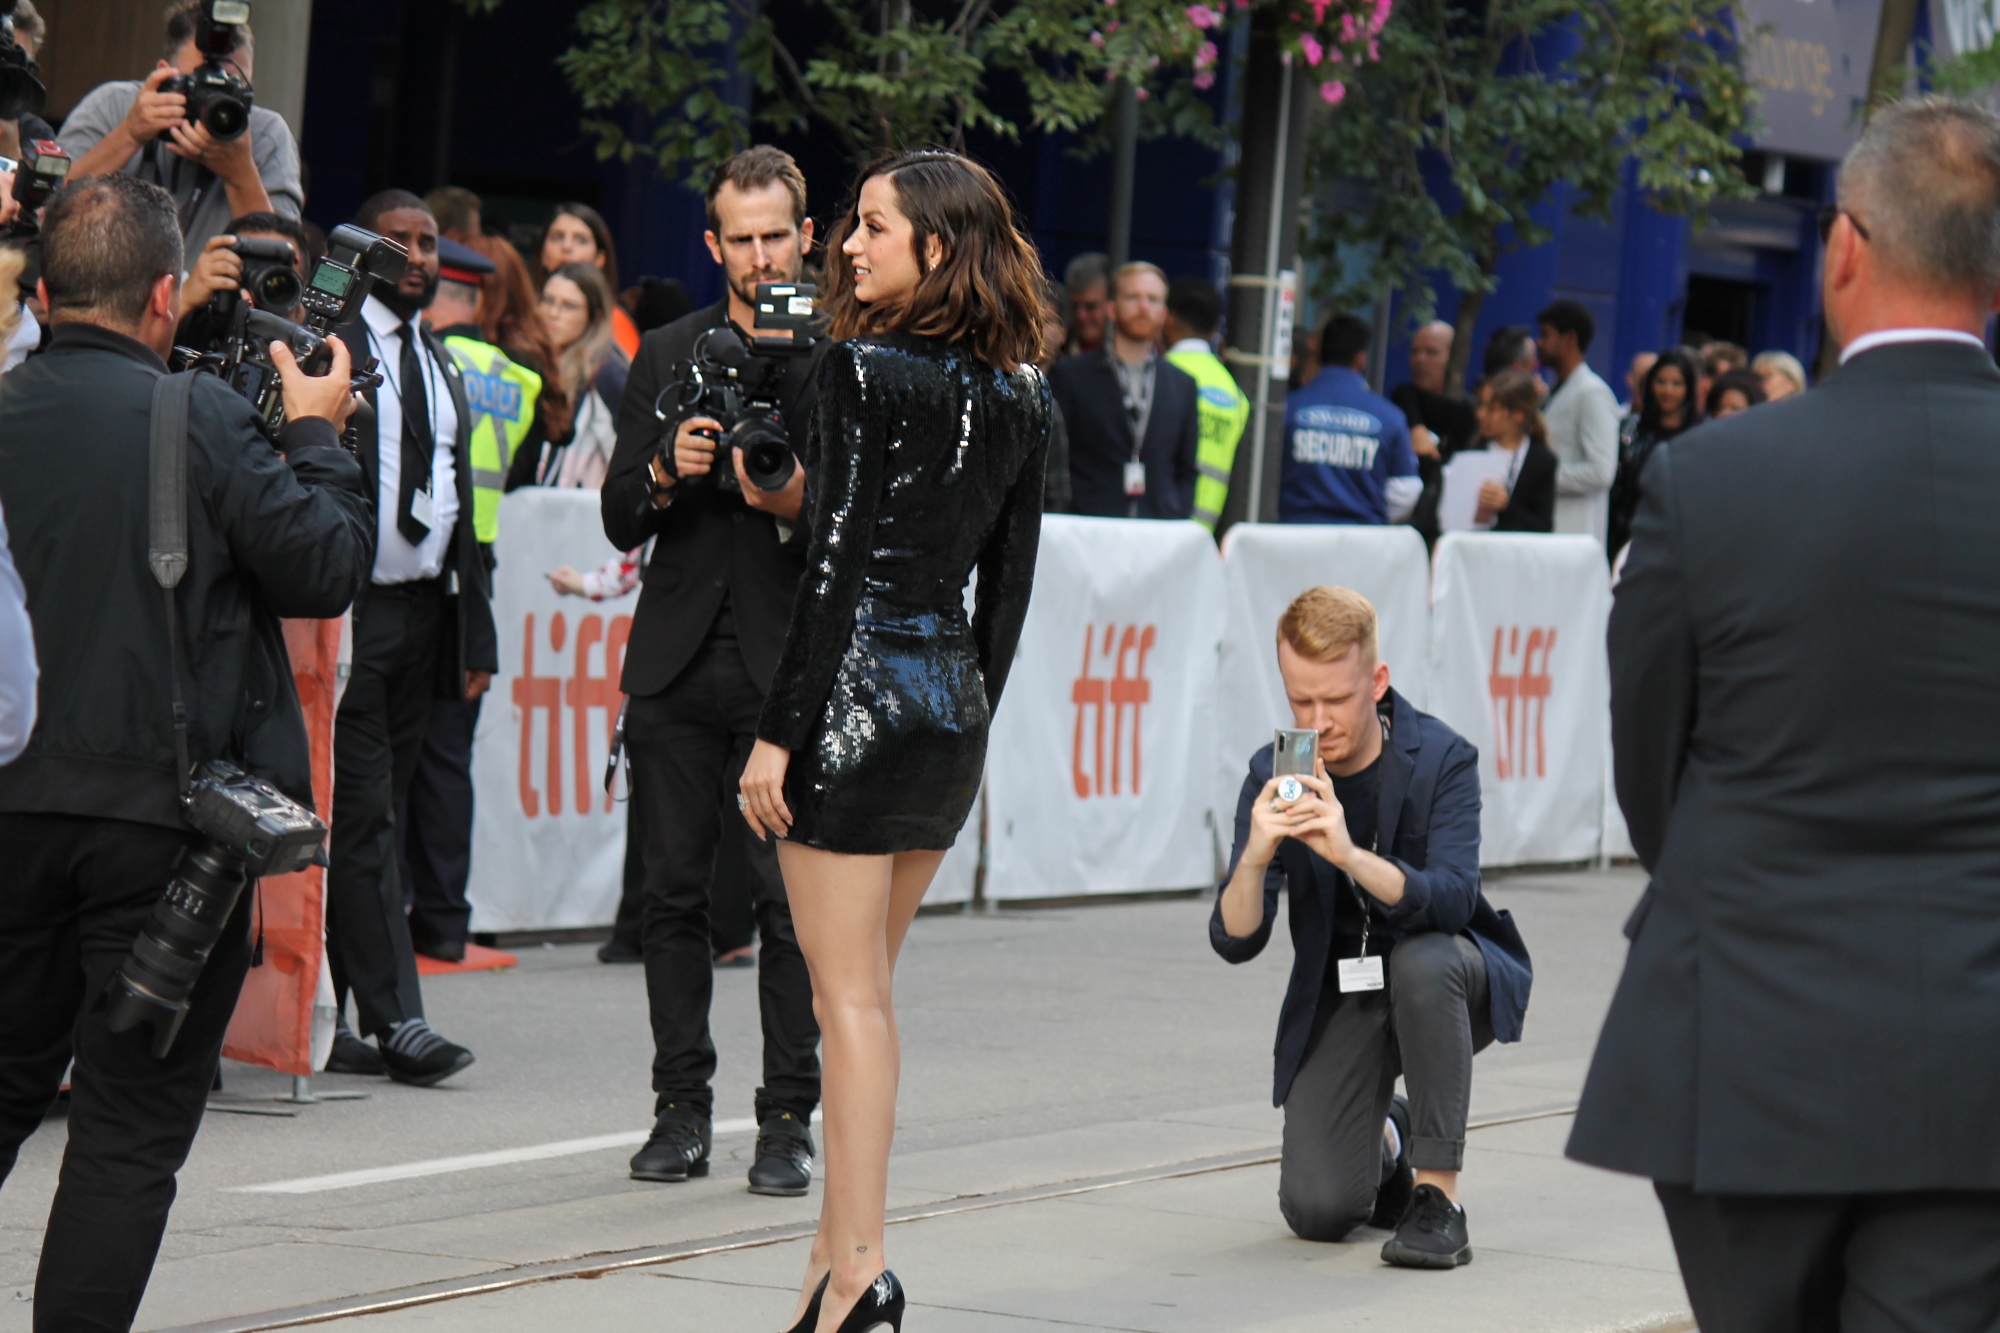 Bautiful Ana de Armas wearing a tight fitting black mini dress at TIFF